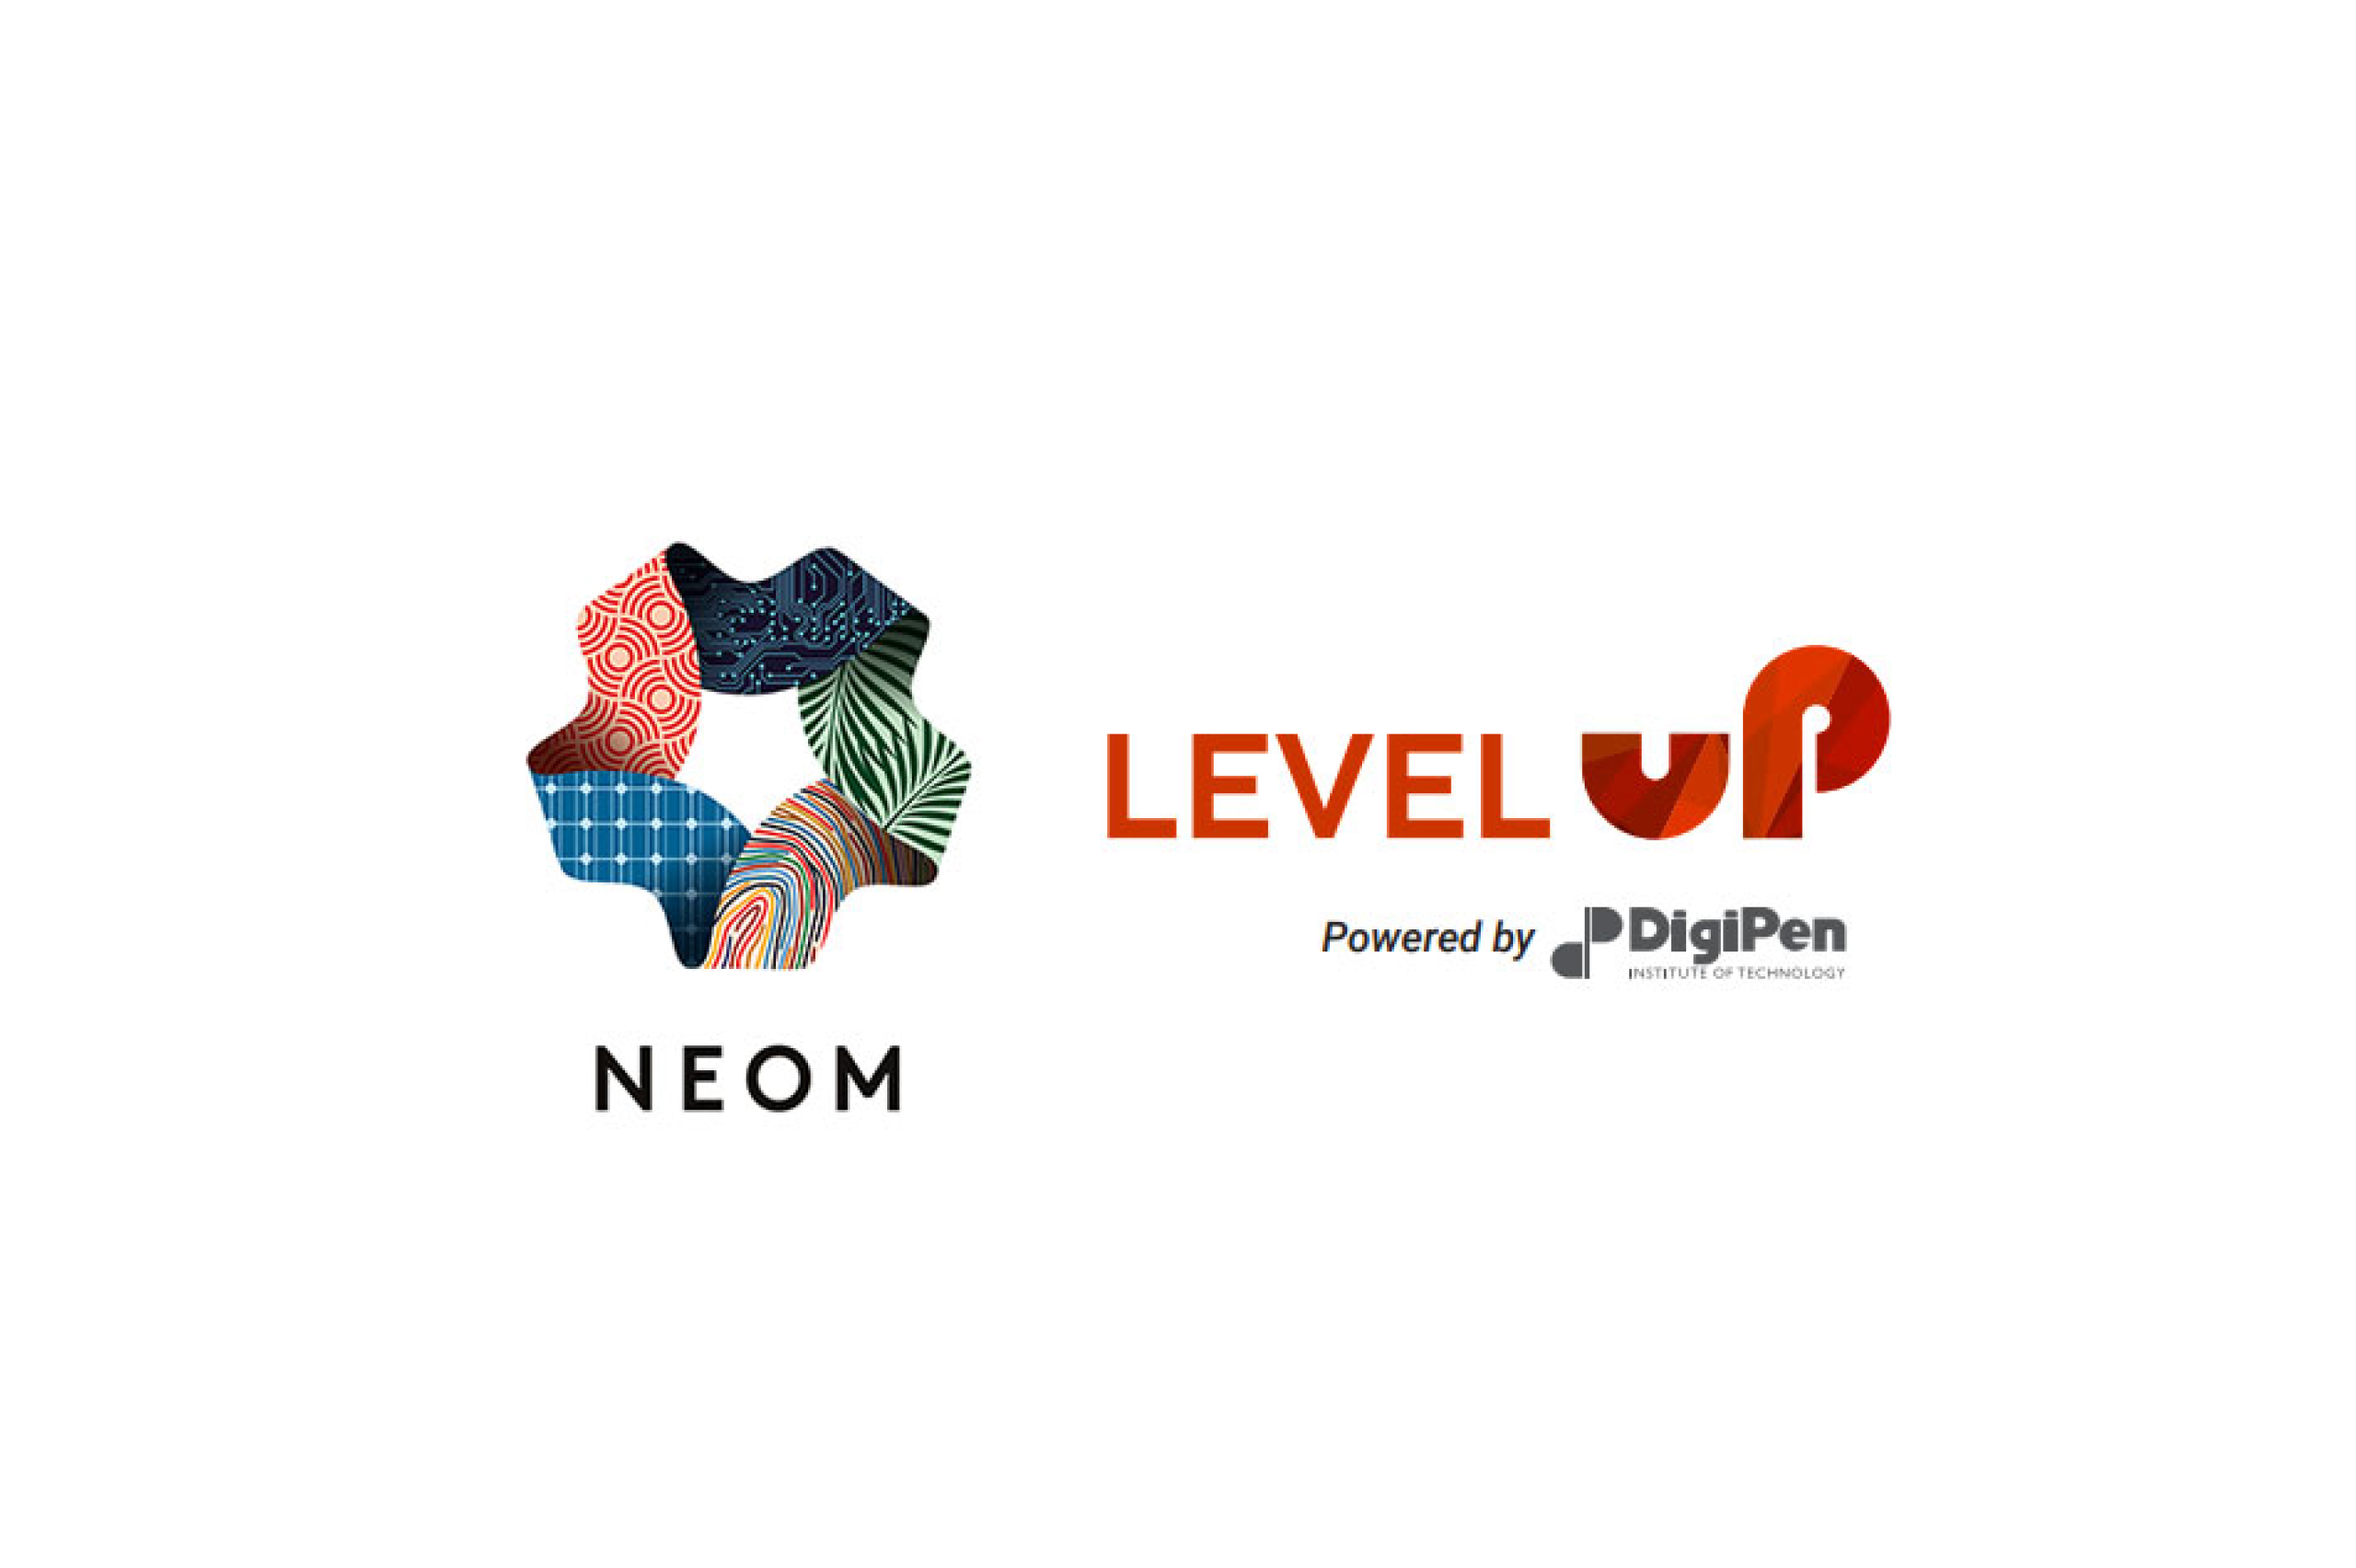  NEOM Level Up游戏加速器项目启动